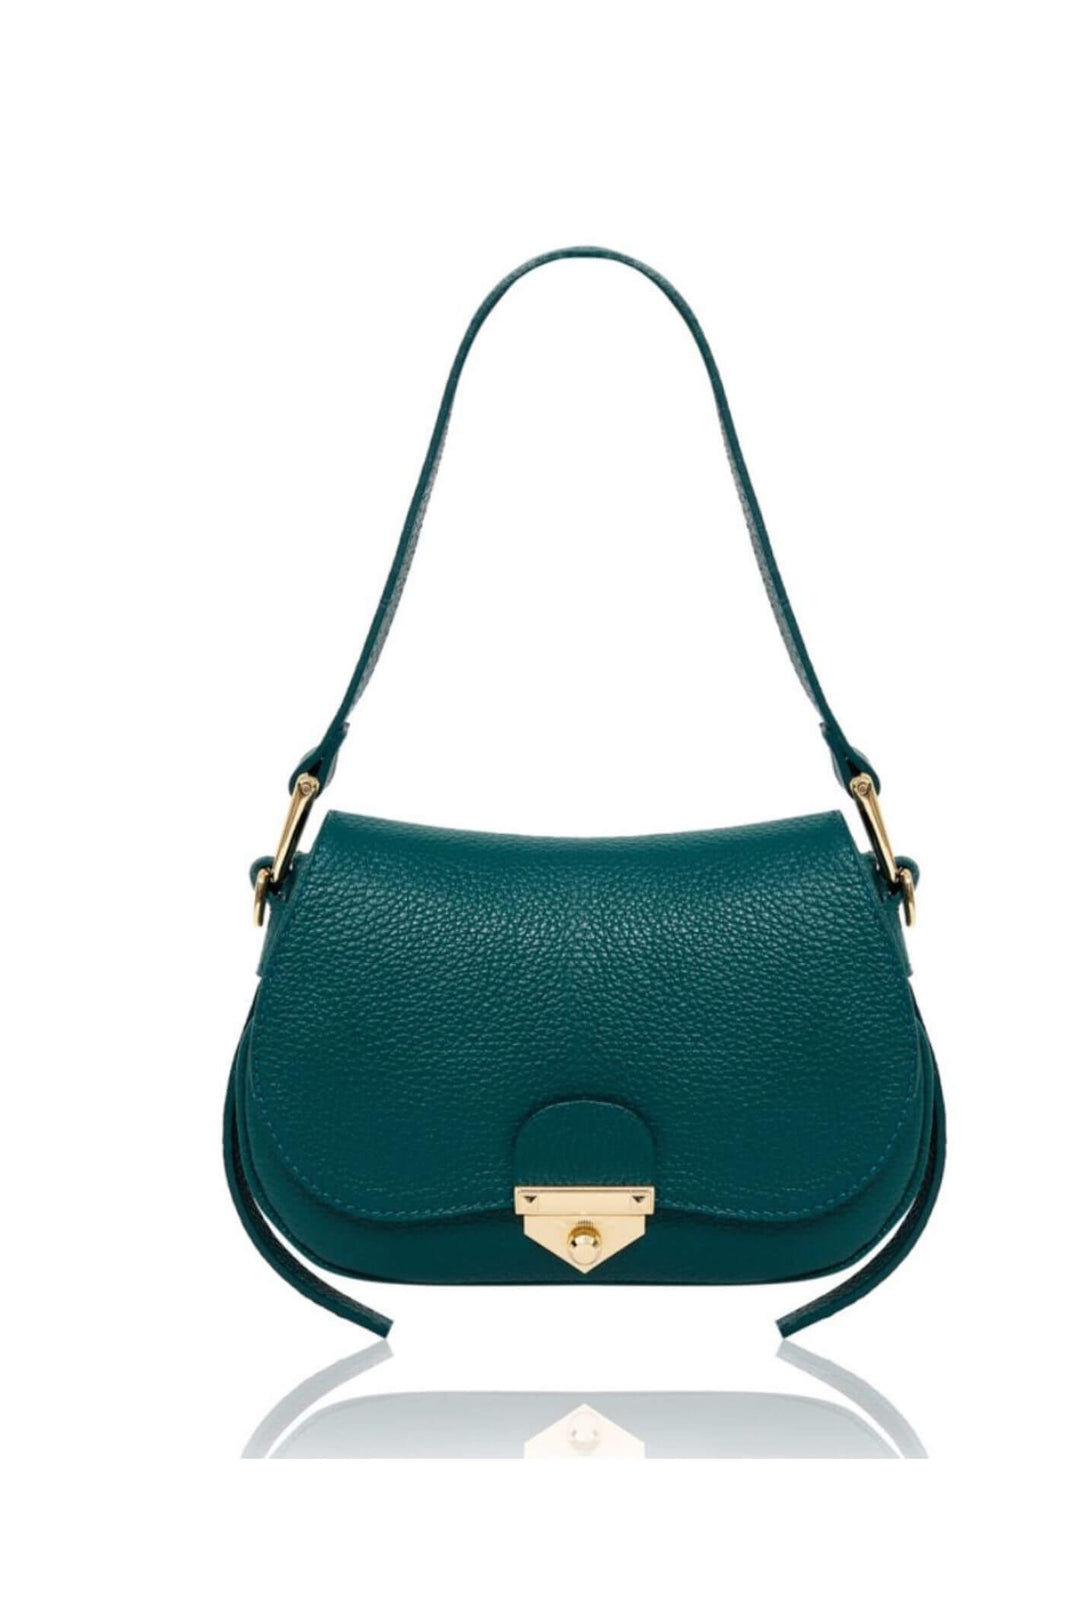 Teal Leather Shoulder Baguette Handbag